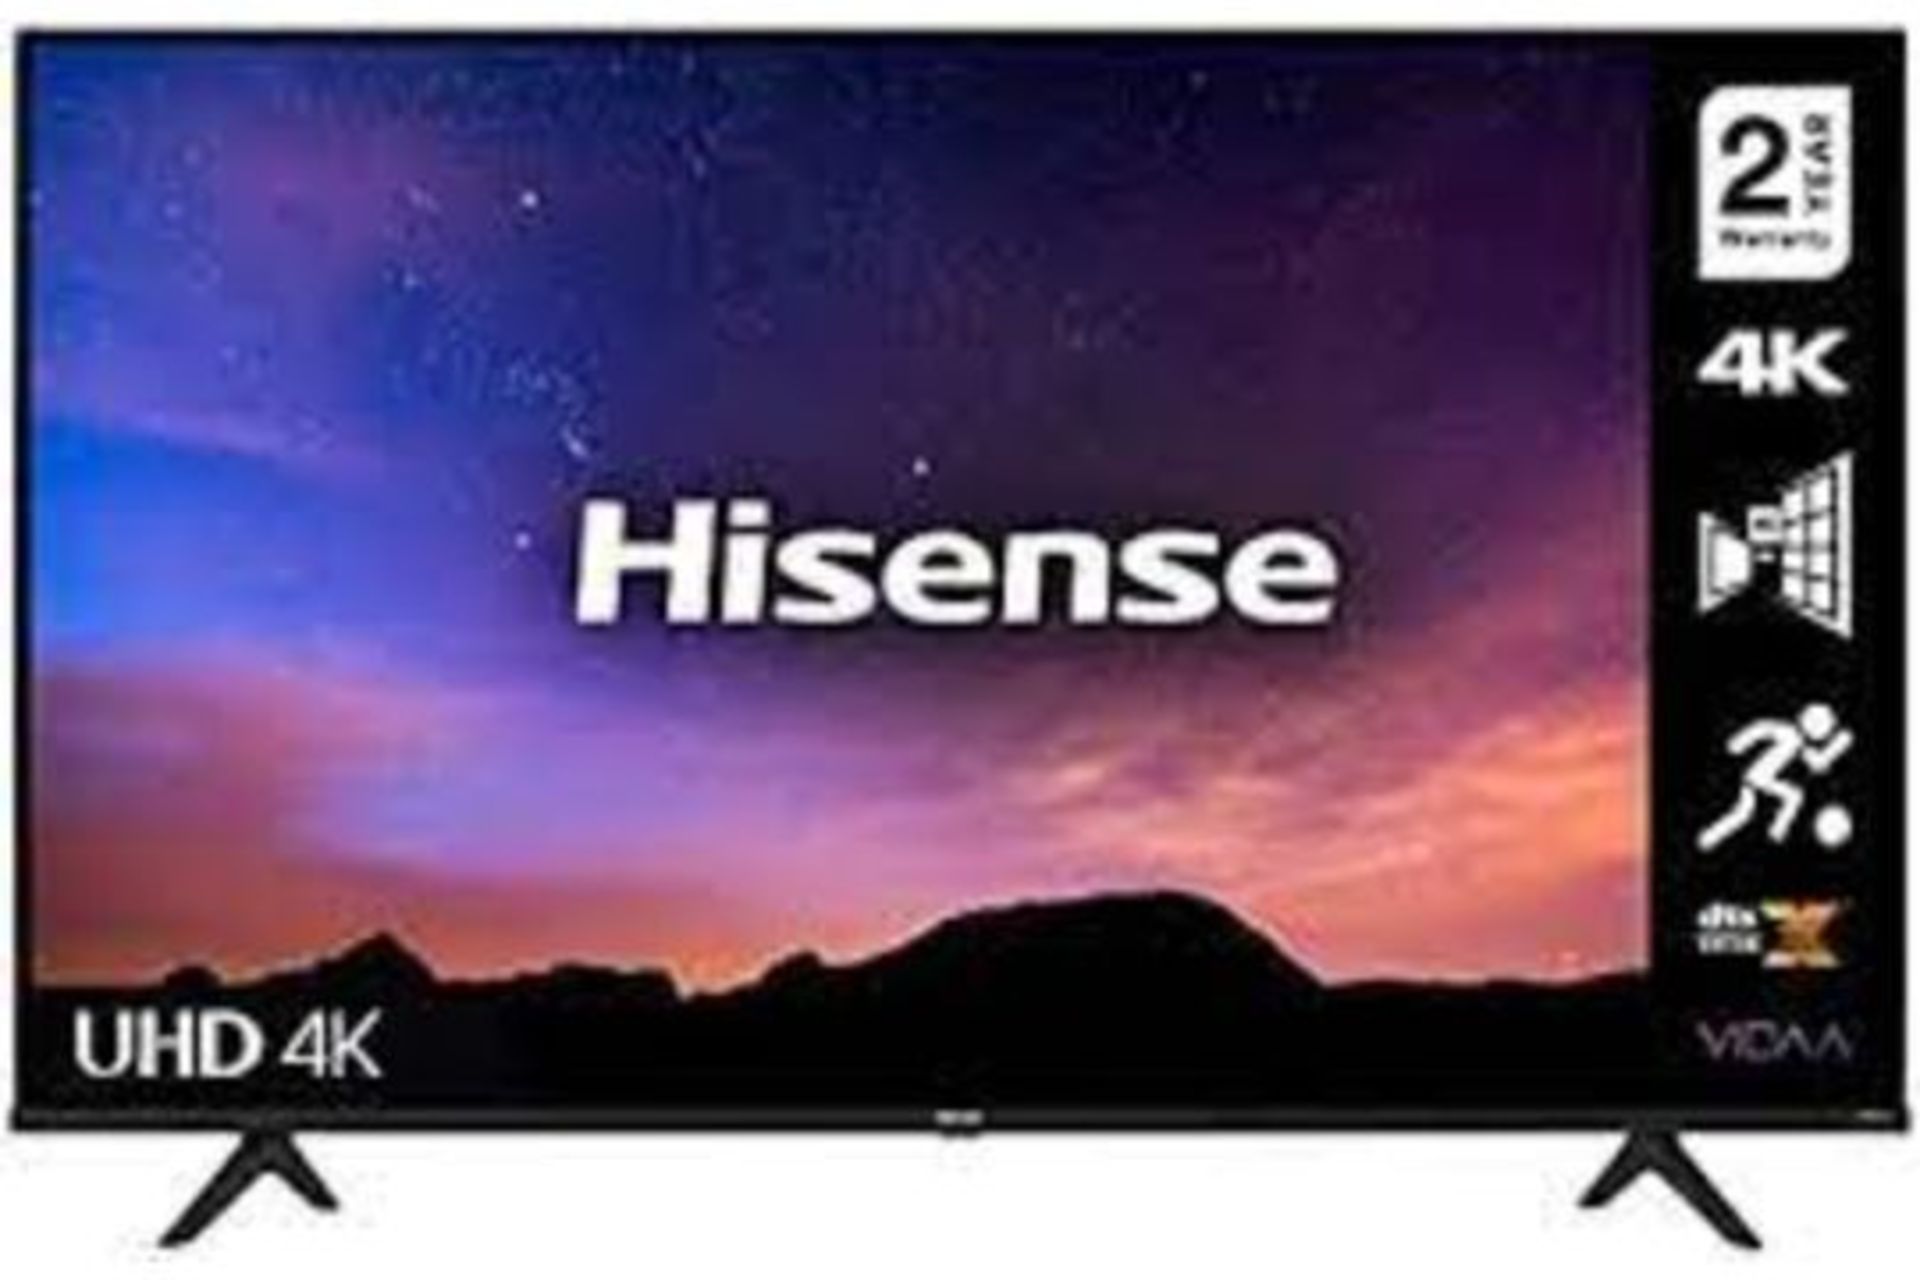 HISENSE SERIES 6 SMART HD TV 50 INCH RRP £499 PW